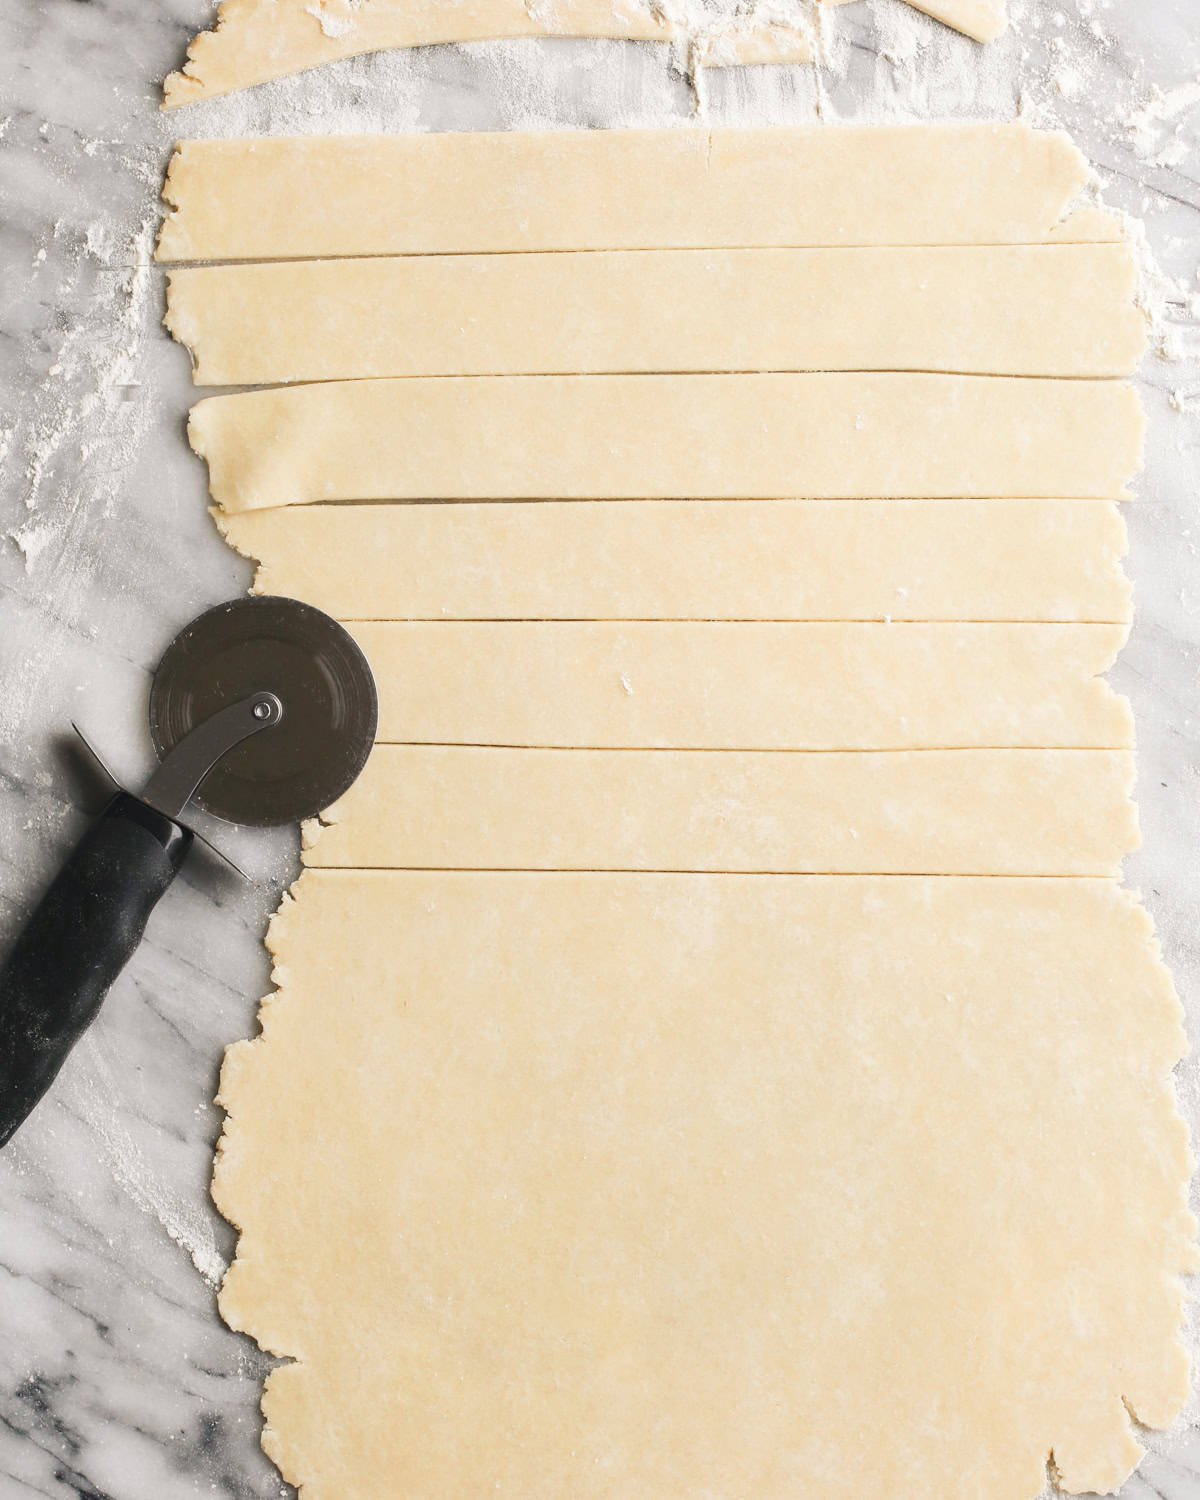 How to Make Peach Pie Crust - cutting strips to make a lattice crust